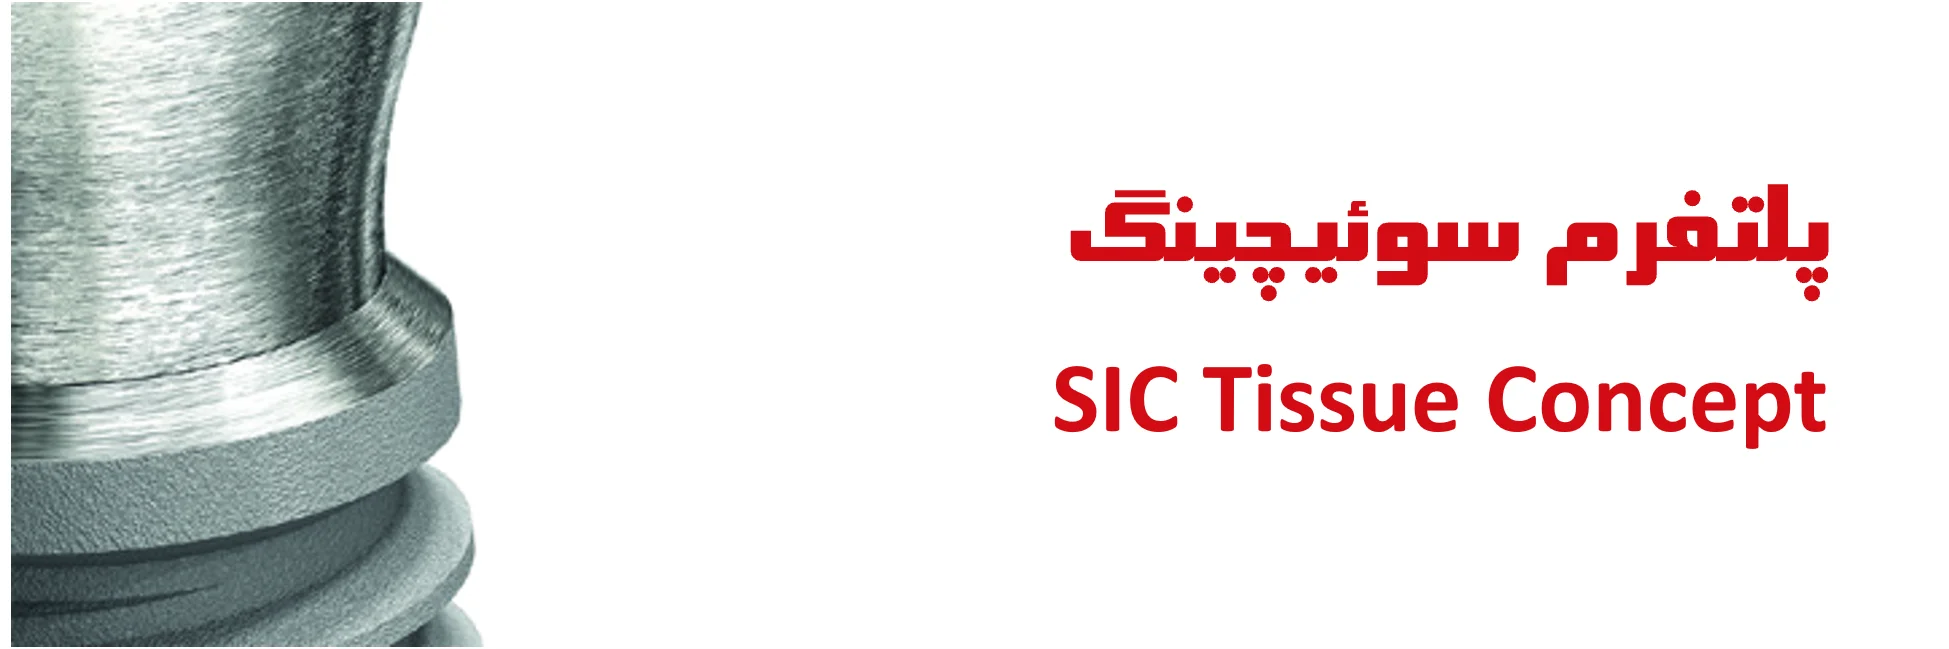 پلتفرم سوئیچینگ SIC tissue concept